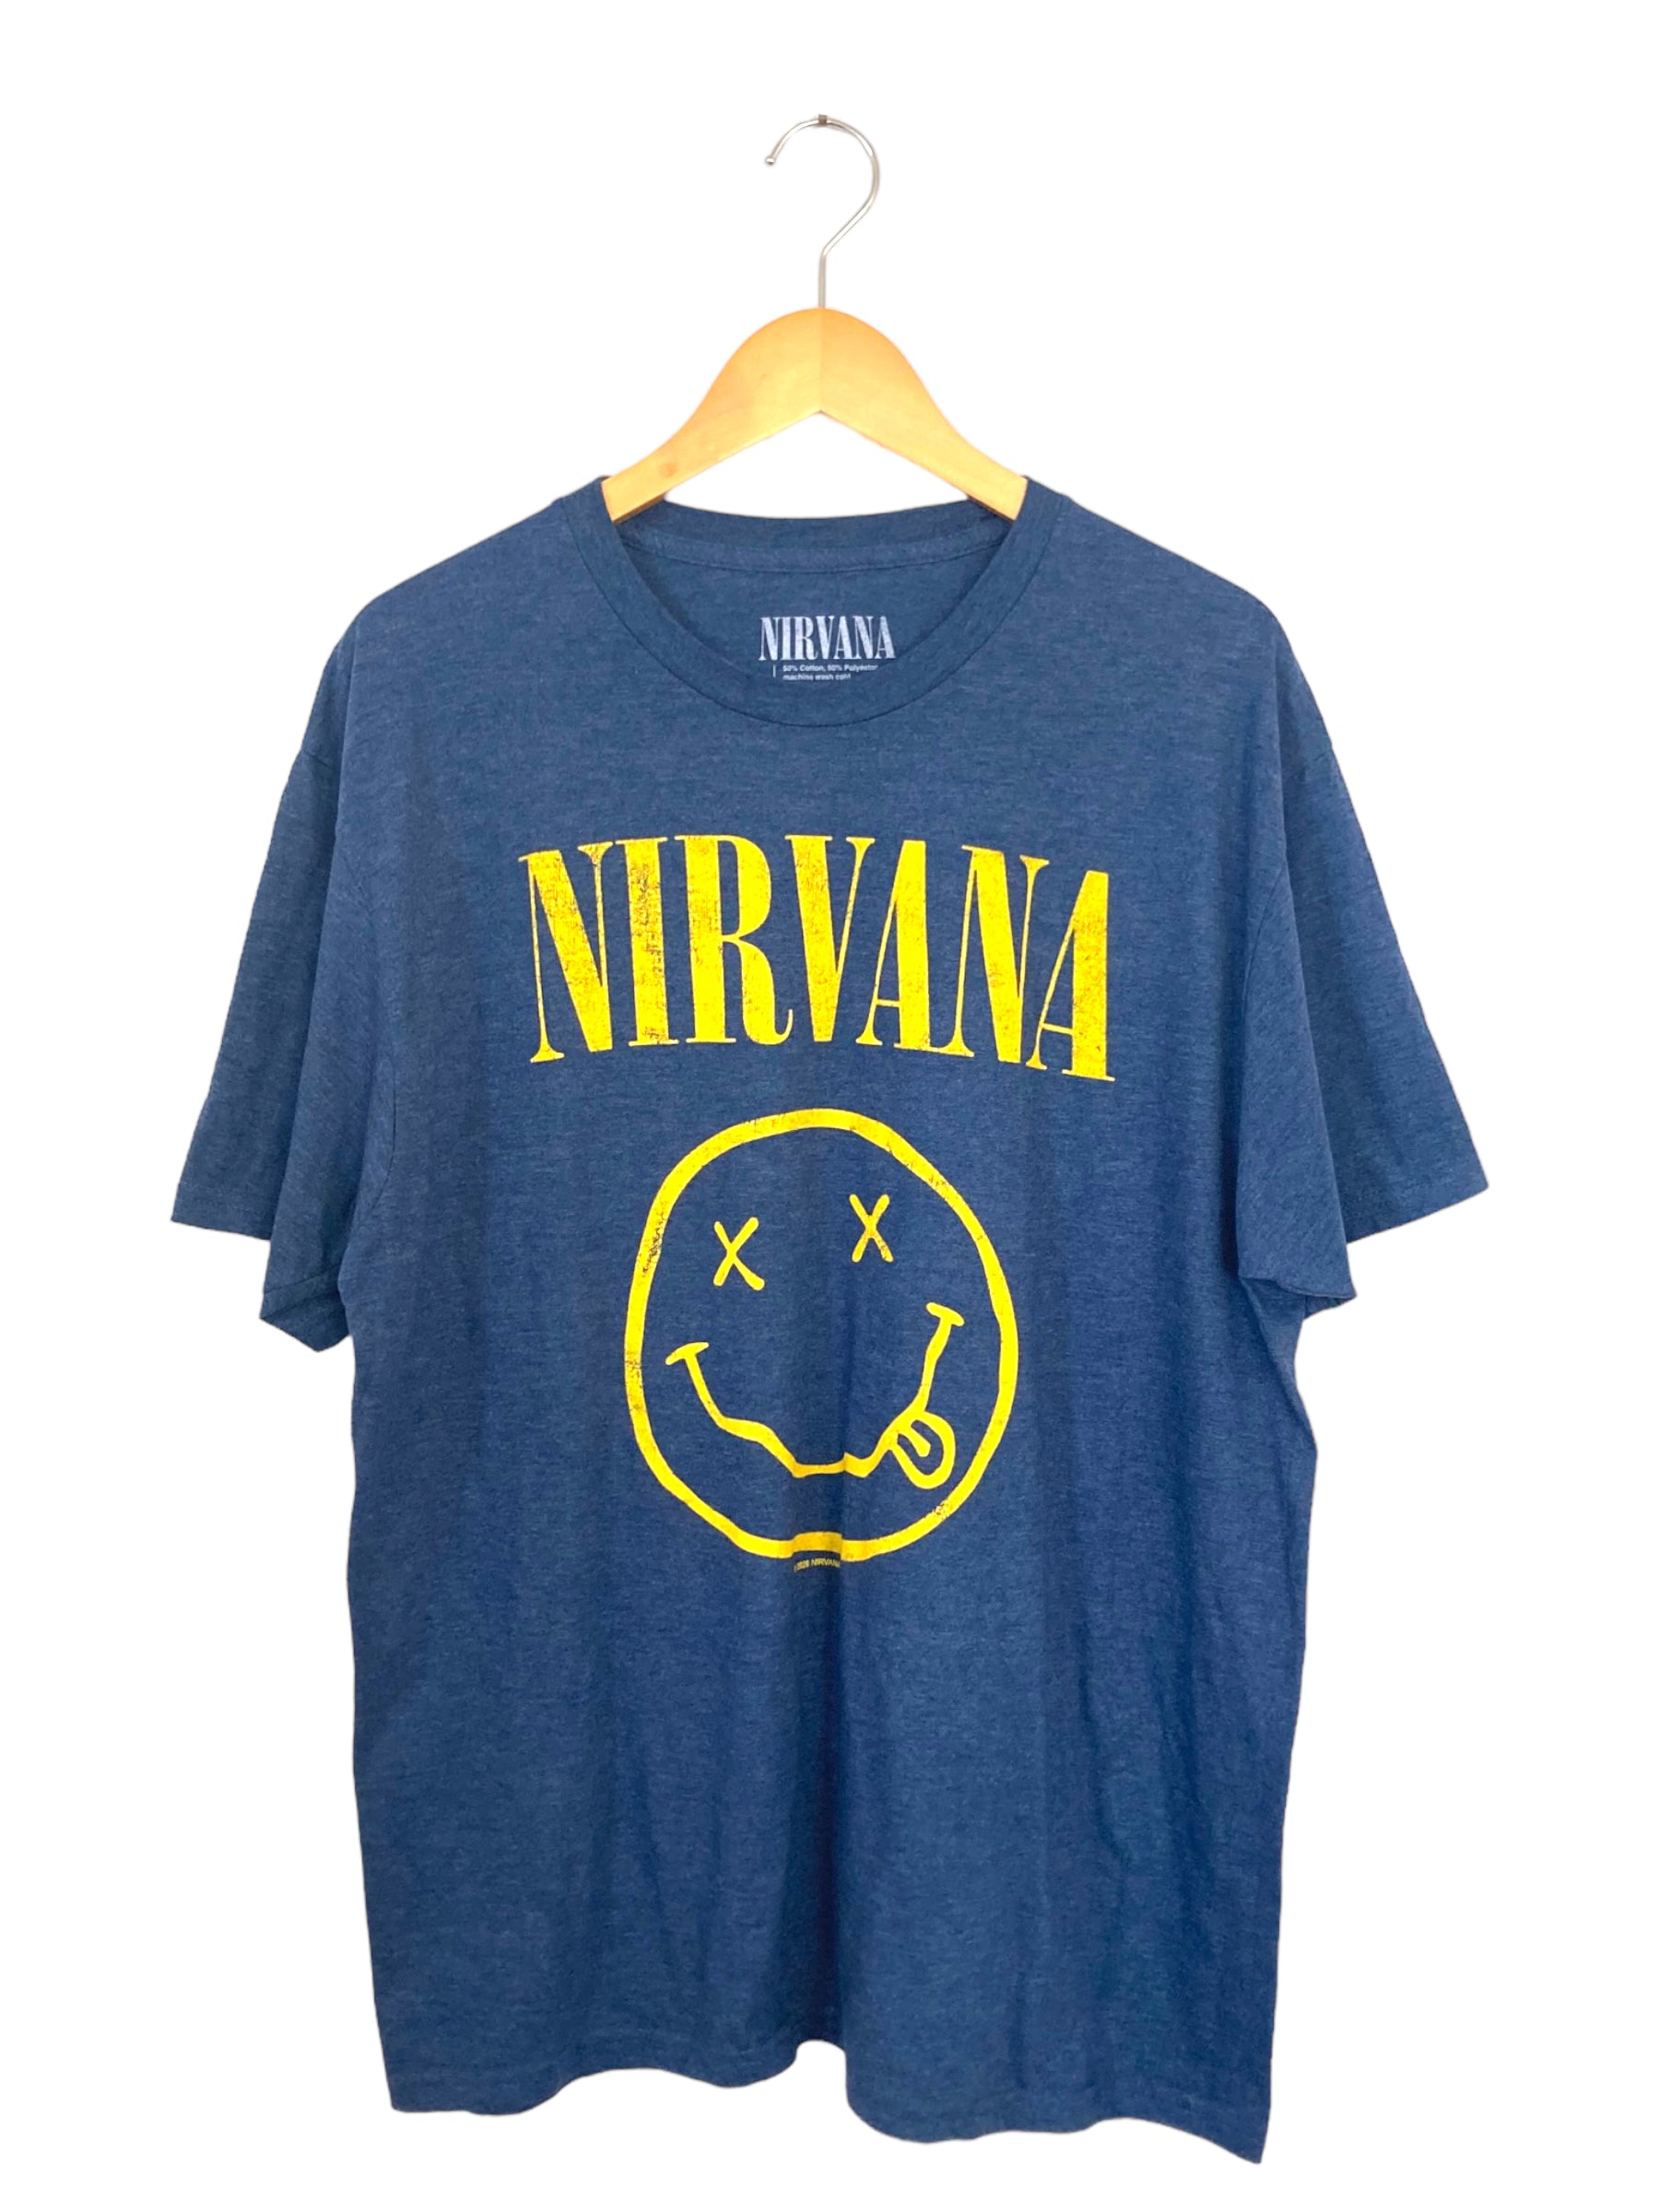 メンズ2014年 651 NIRVANA ニルヴァーナ スマイル Tシャツ サイズXL ...